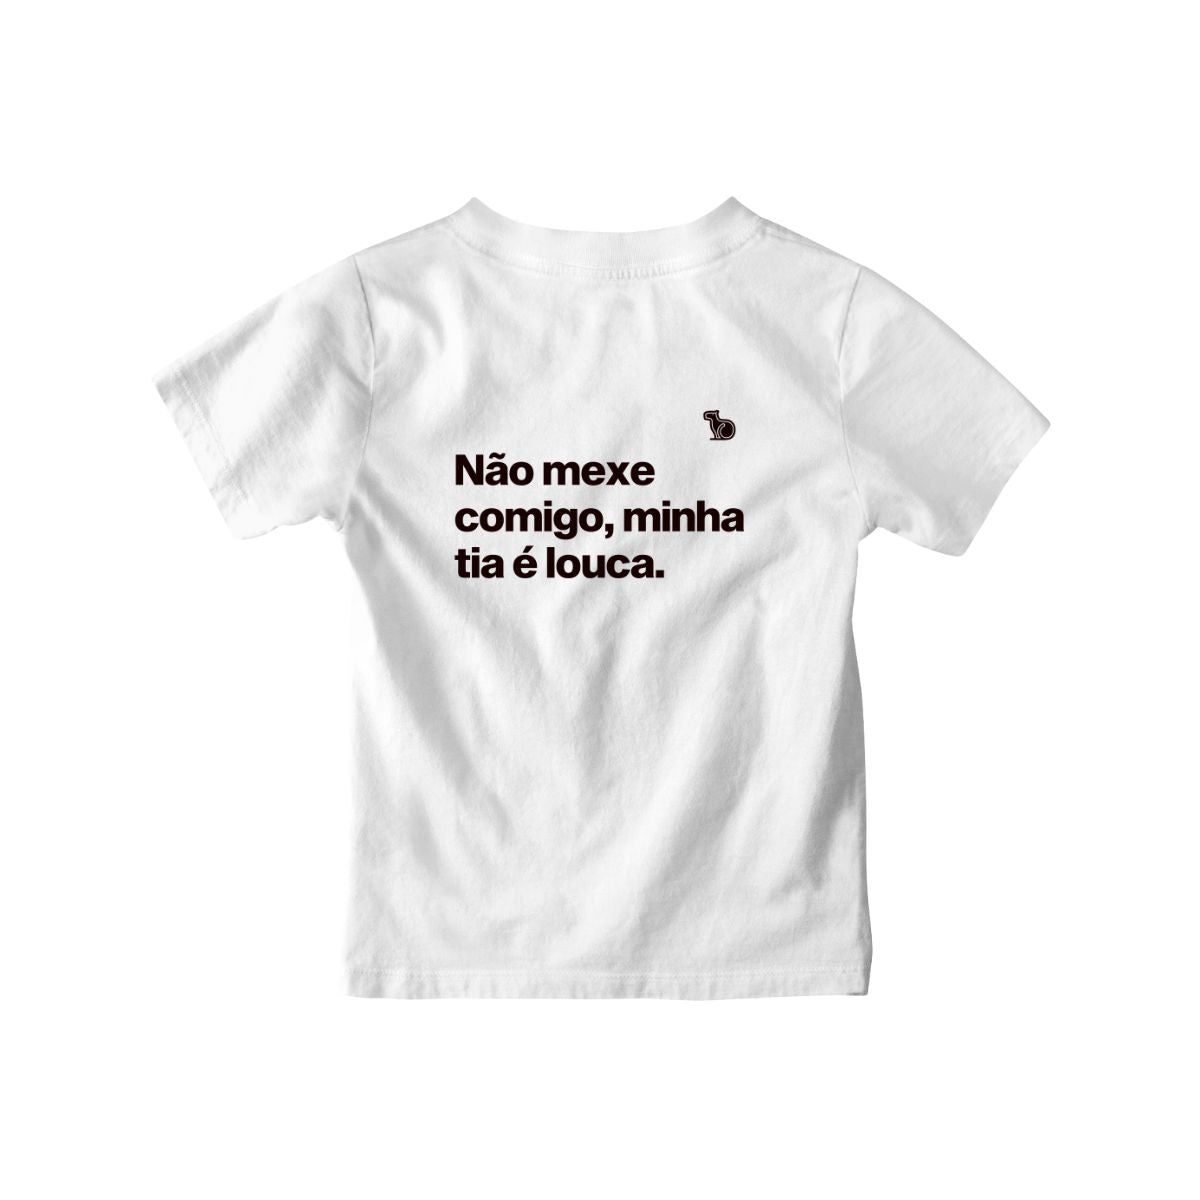 Camiseta infantil branca com a frase "Não mexe comigo, minha tia é louca."